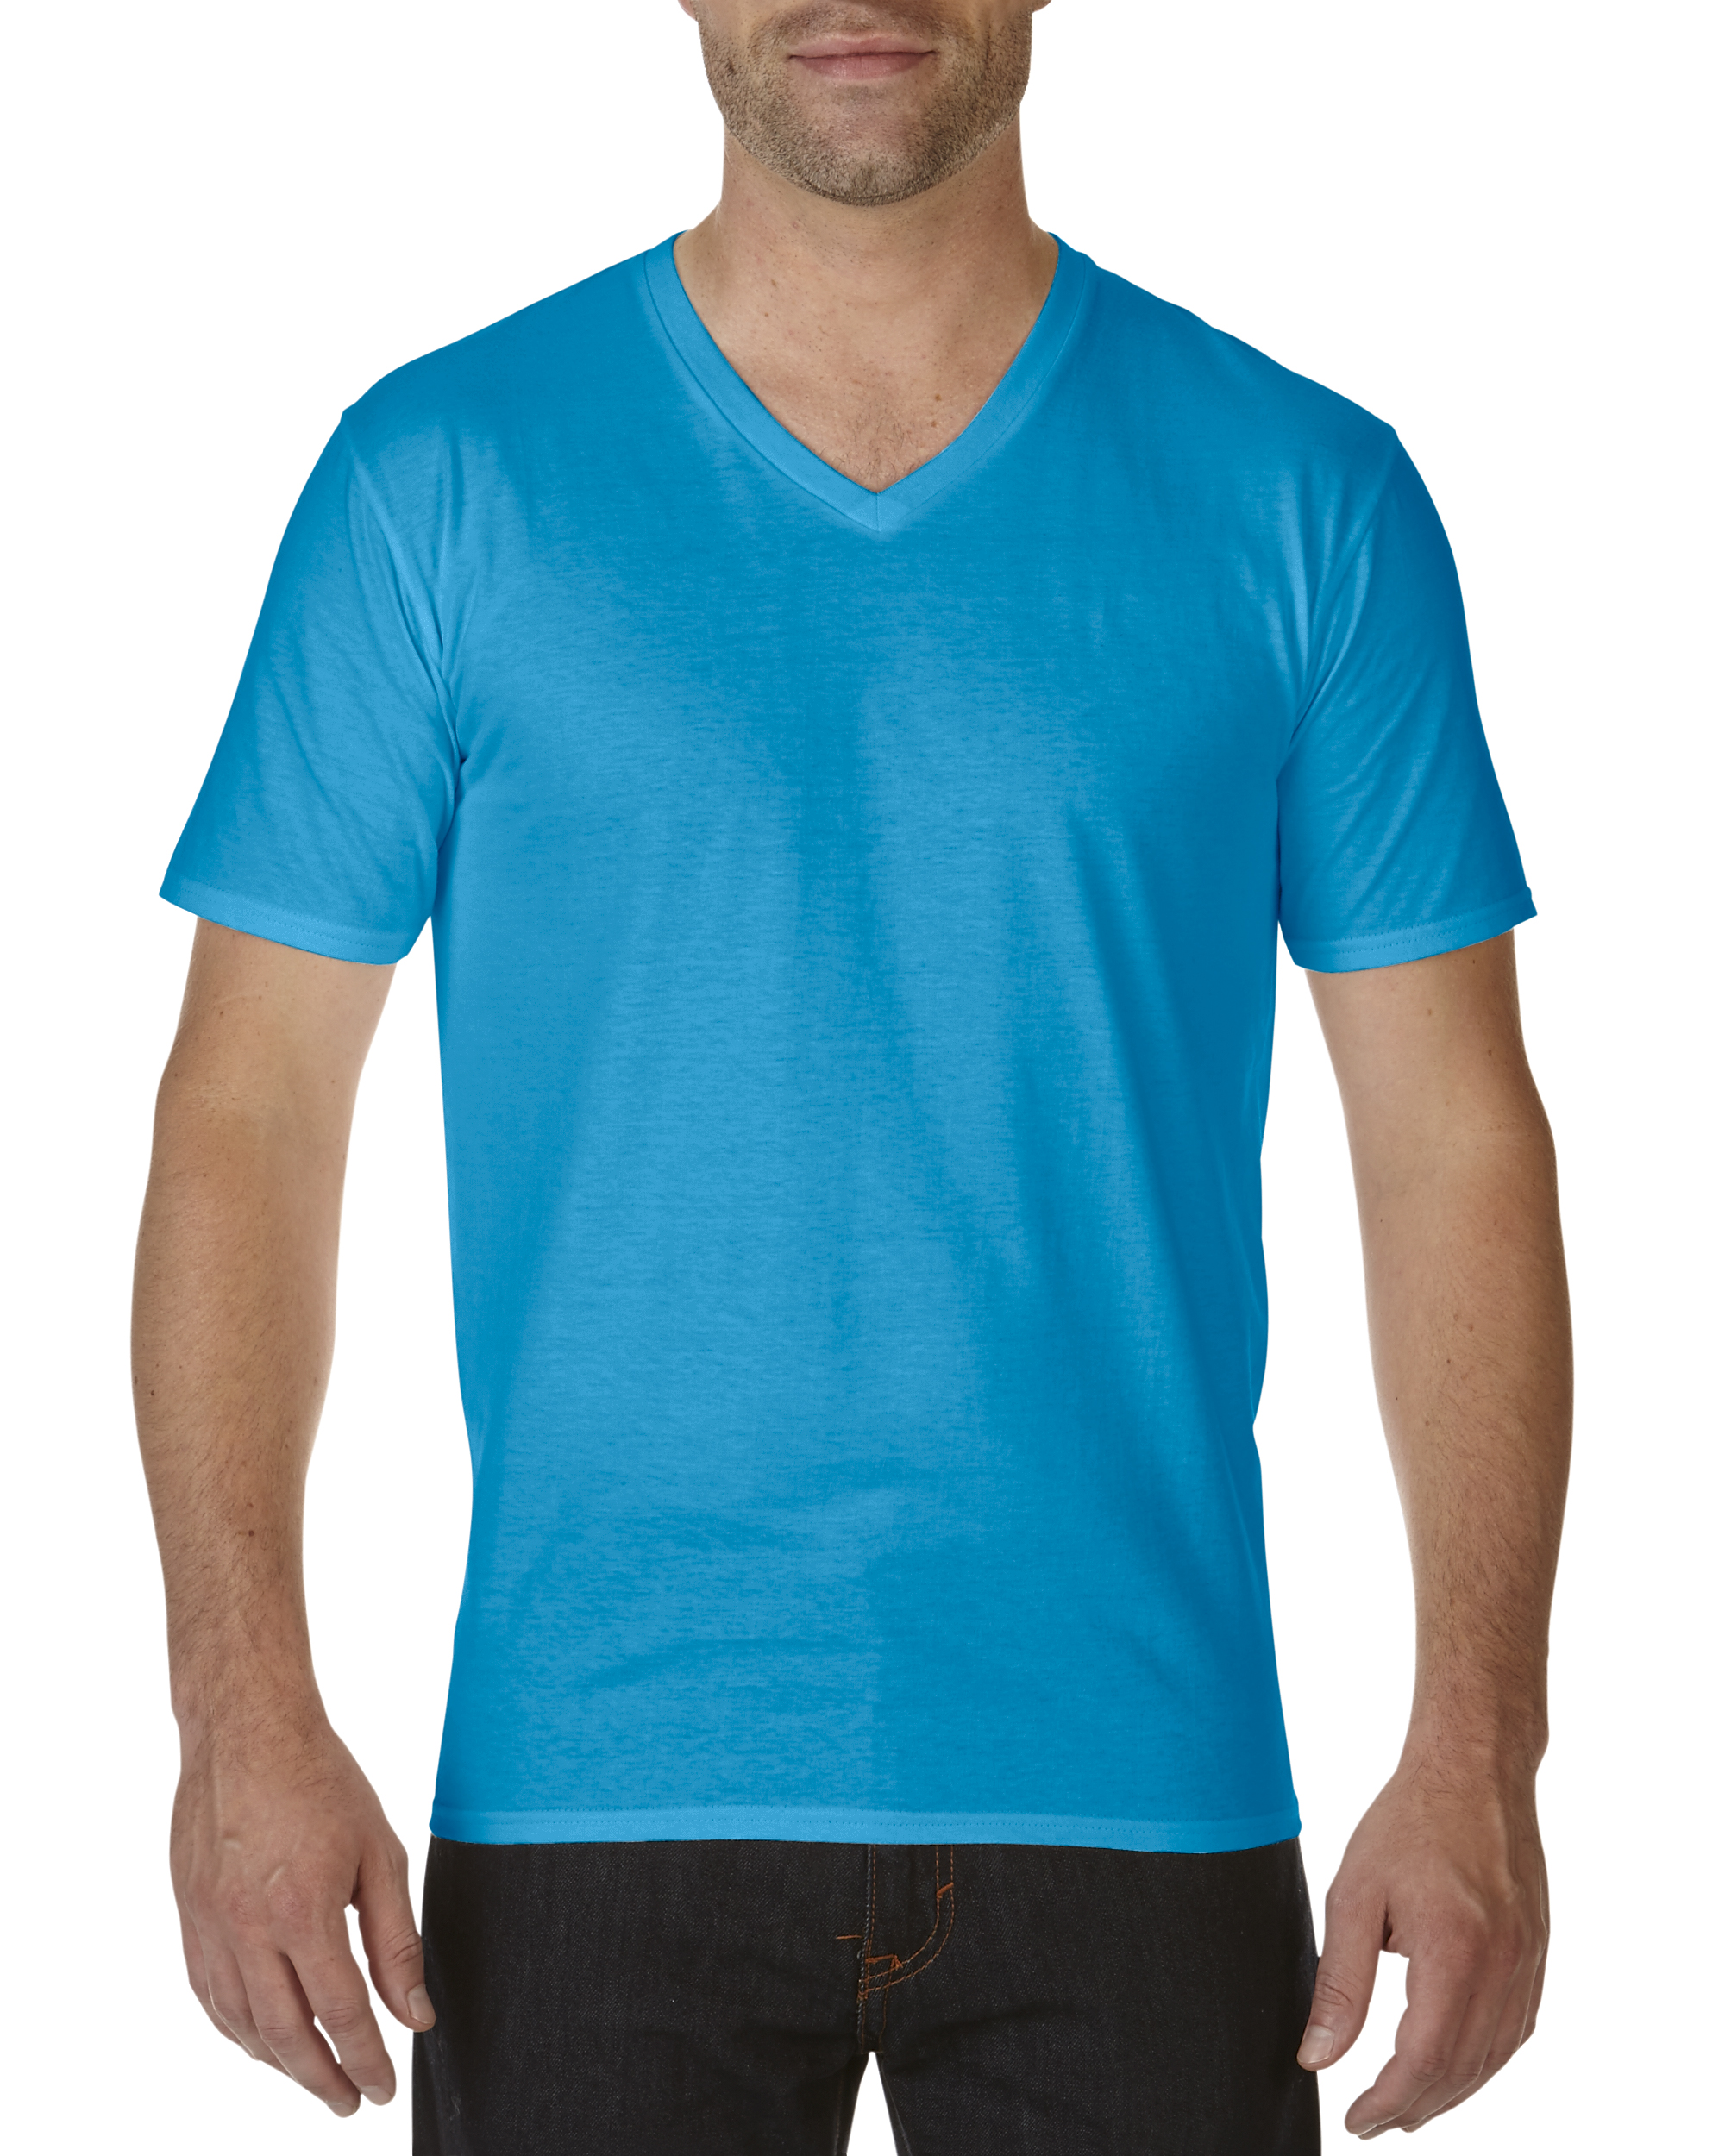 T-shirt V-Neck Premium Cotton GILDAN